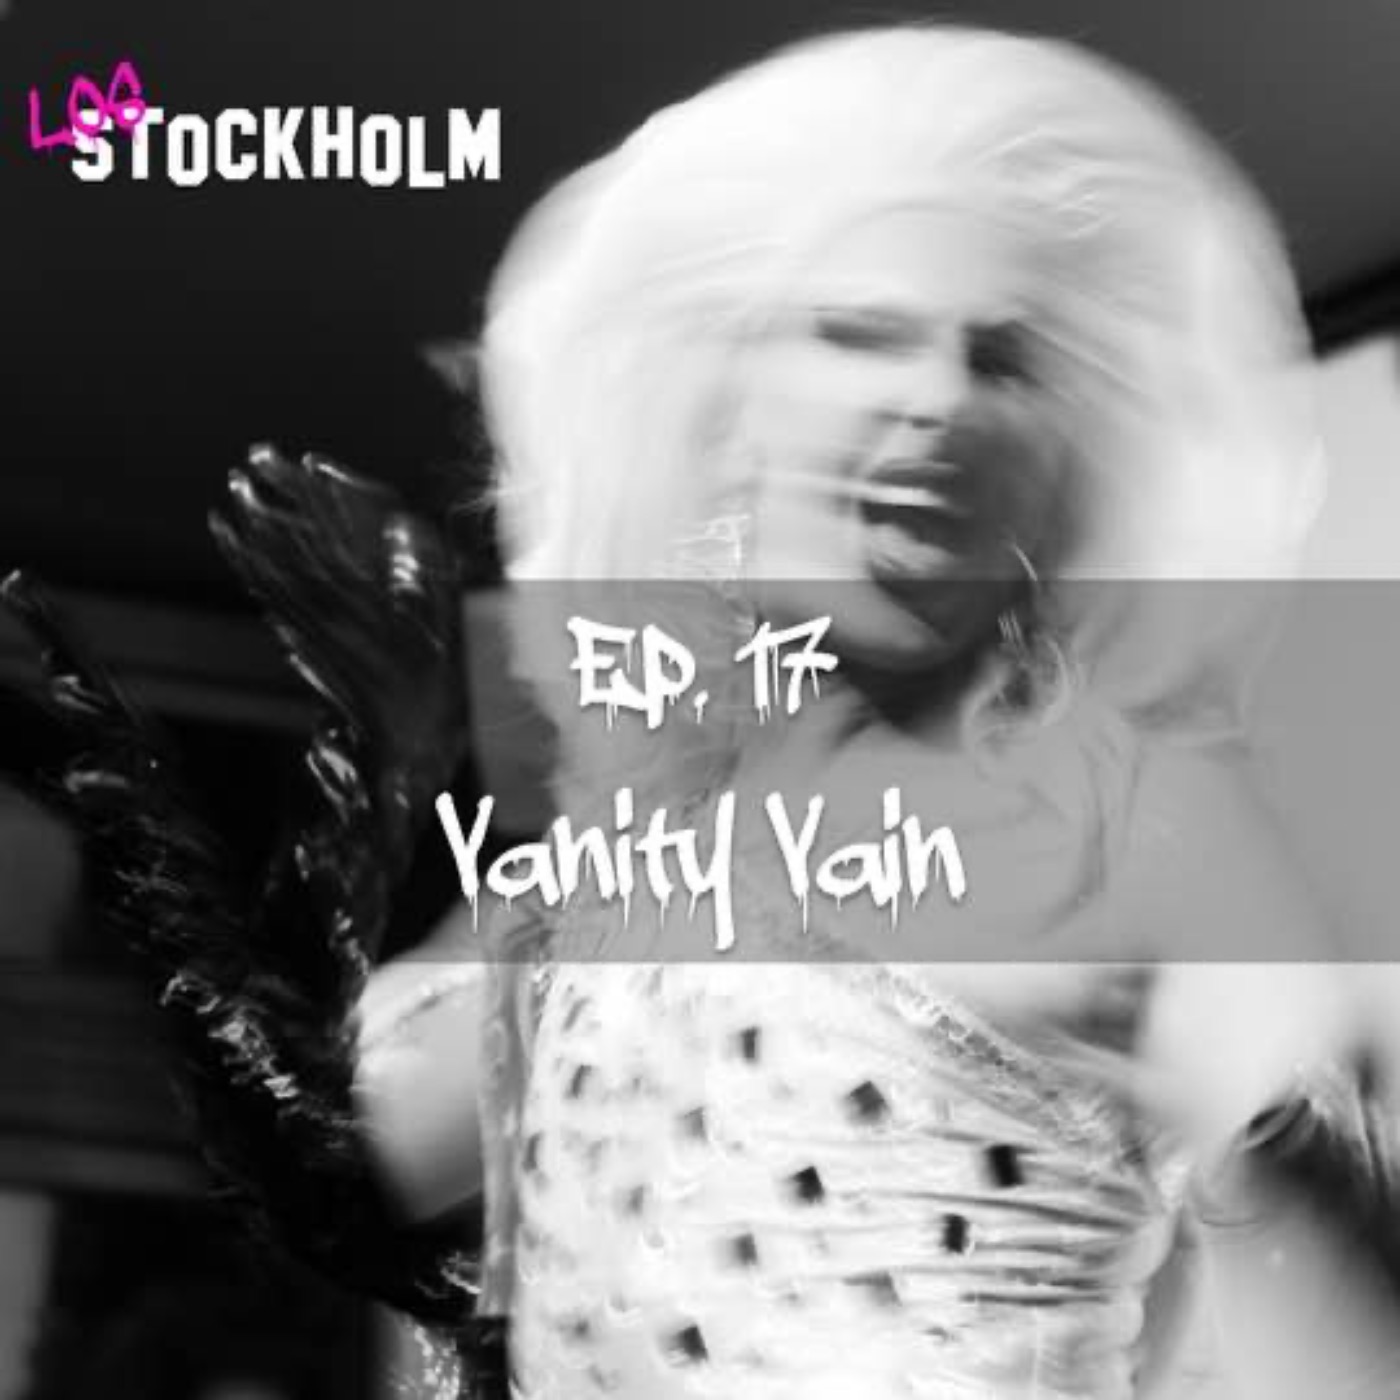 EPISODE 17: Vanity Vain